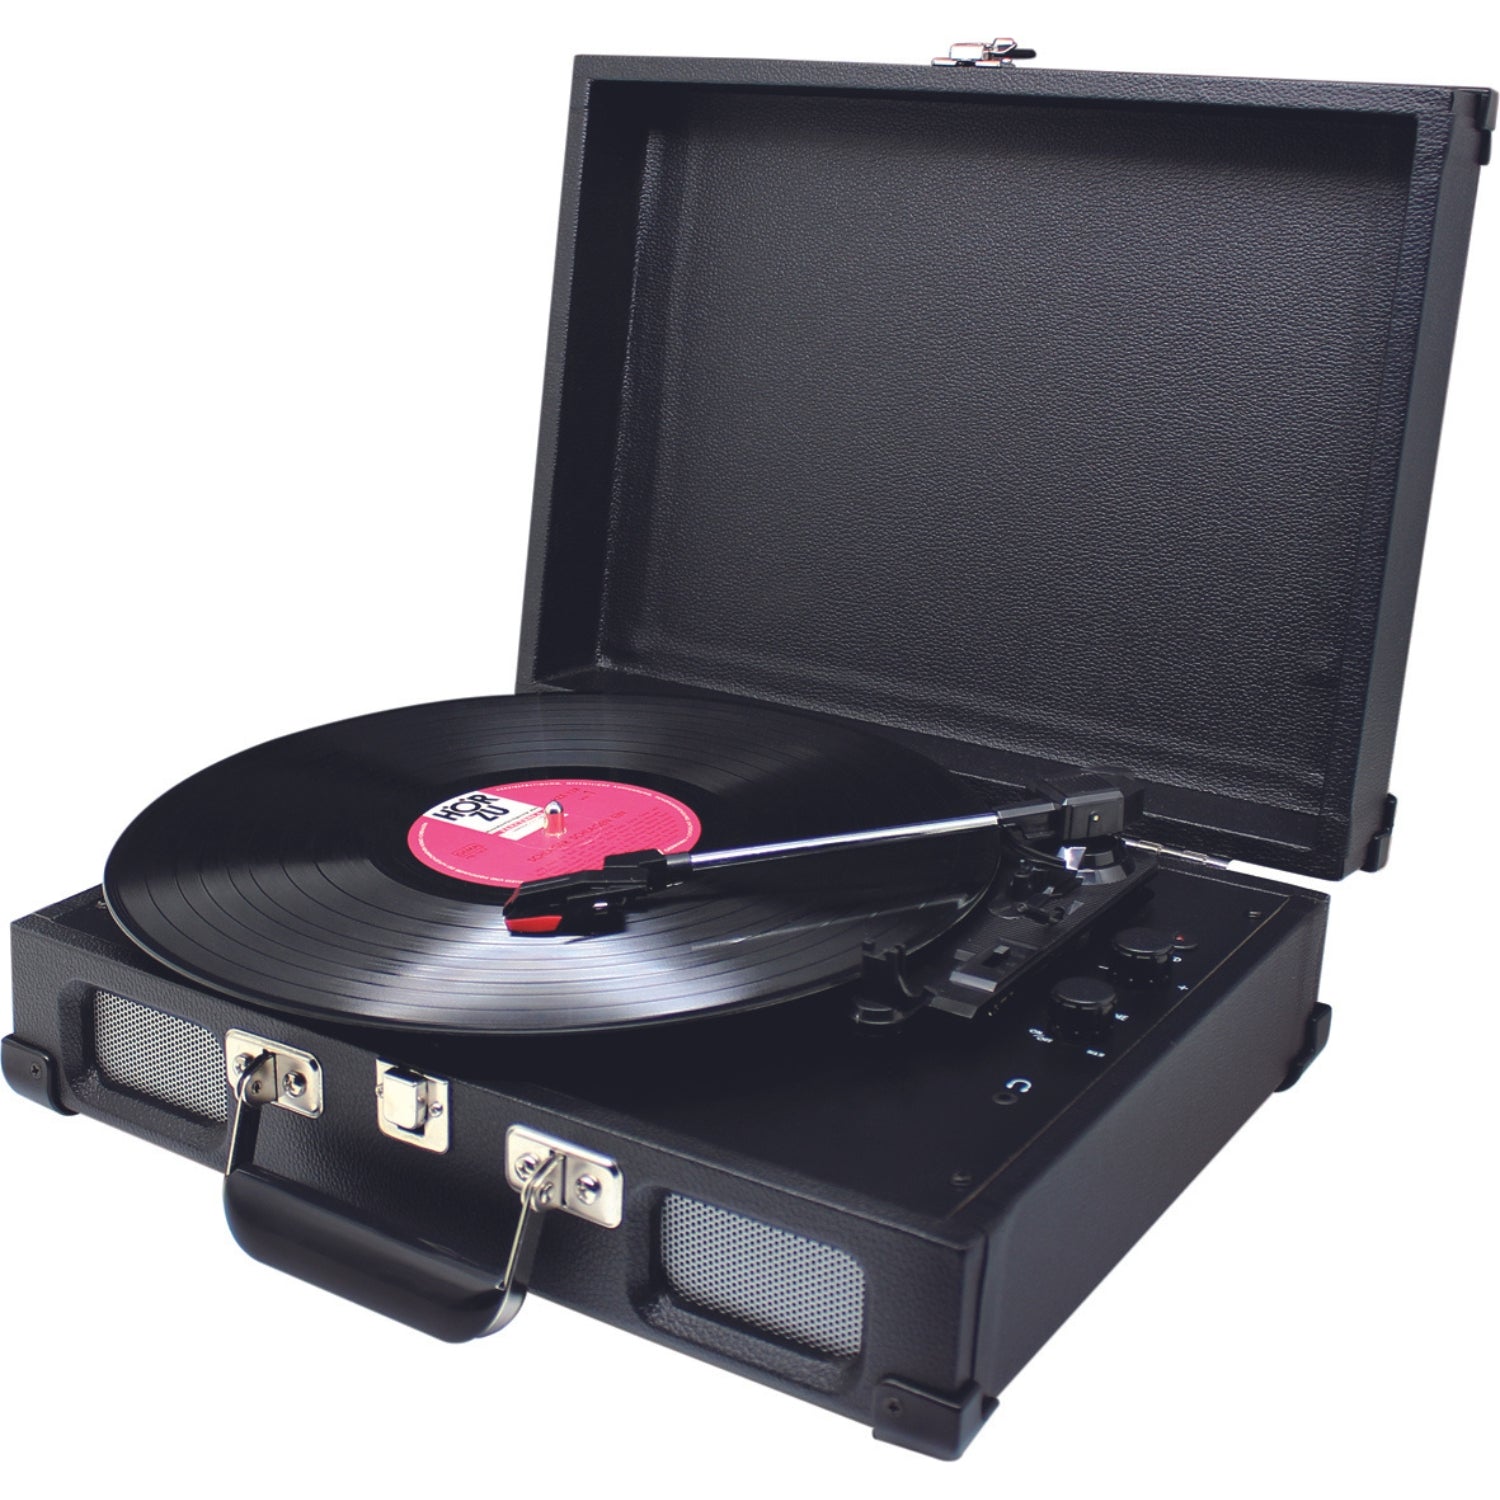 Tourne-disque Soundmaster PL580 noir nostalgie avec prise casque